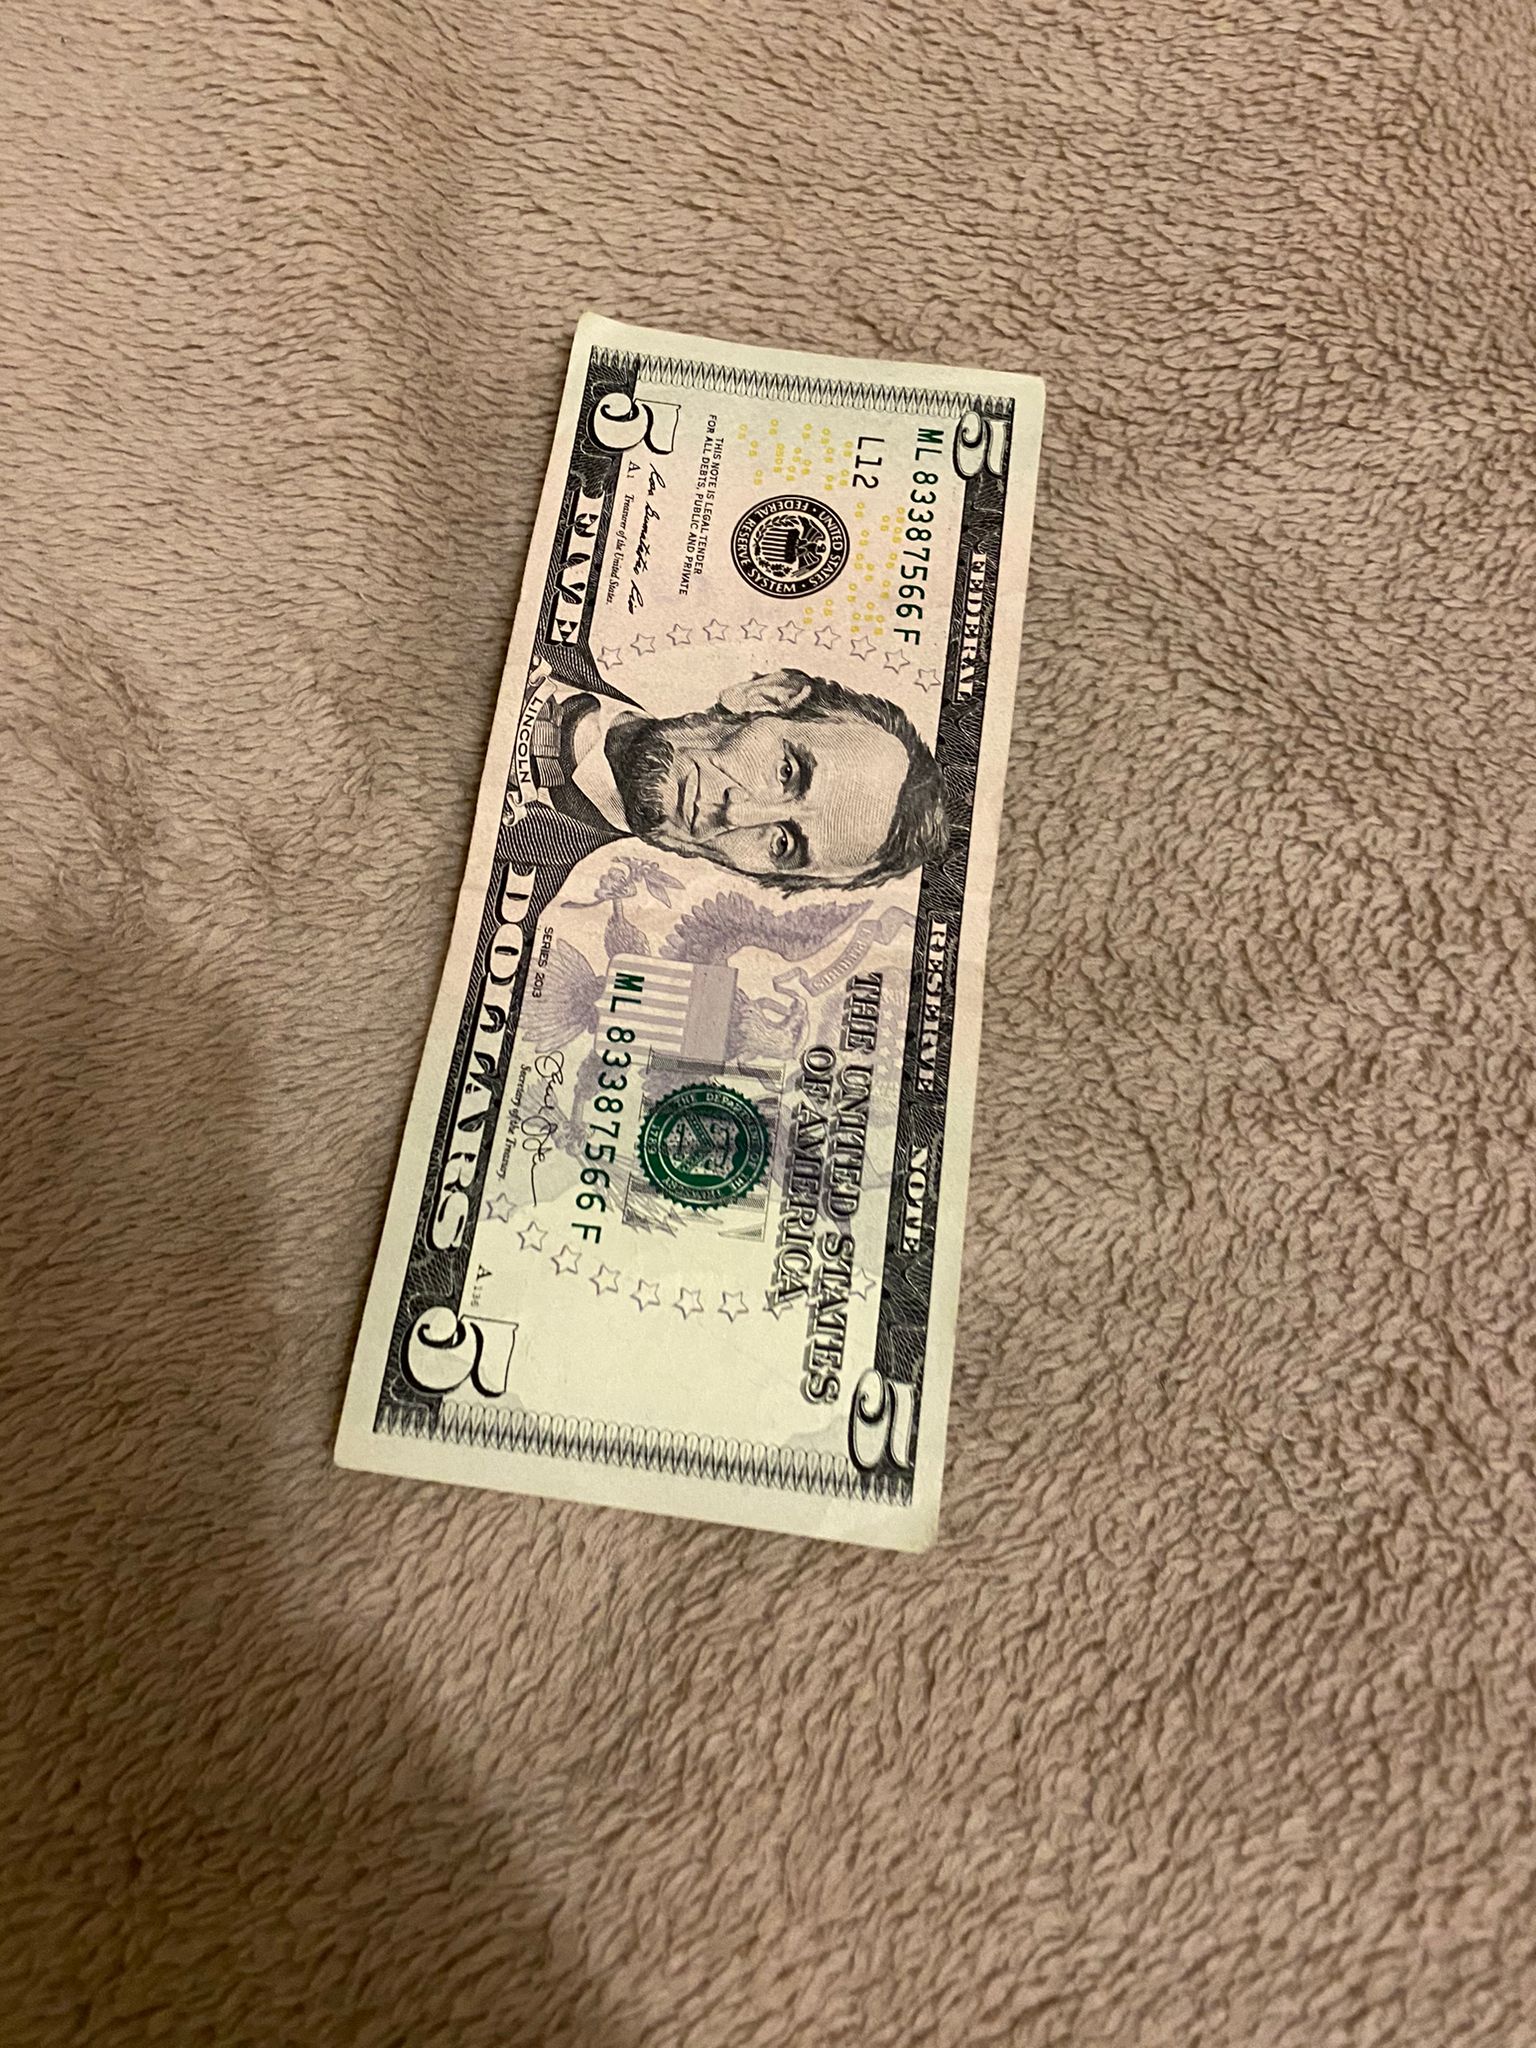 USD $5 Bills